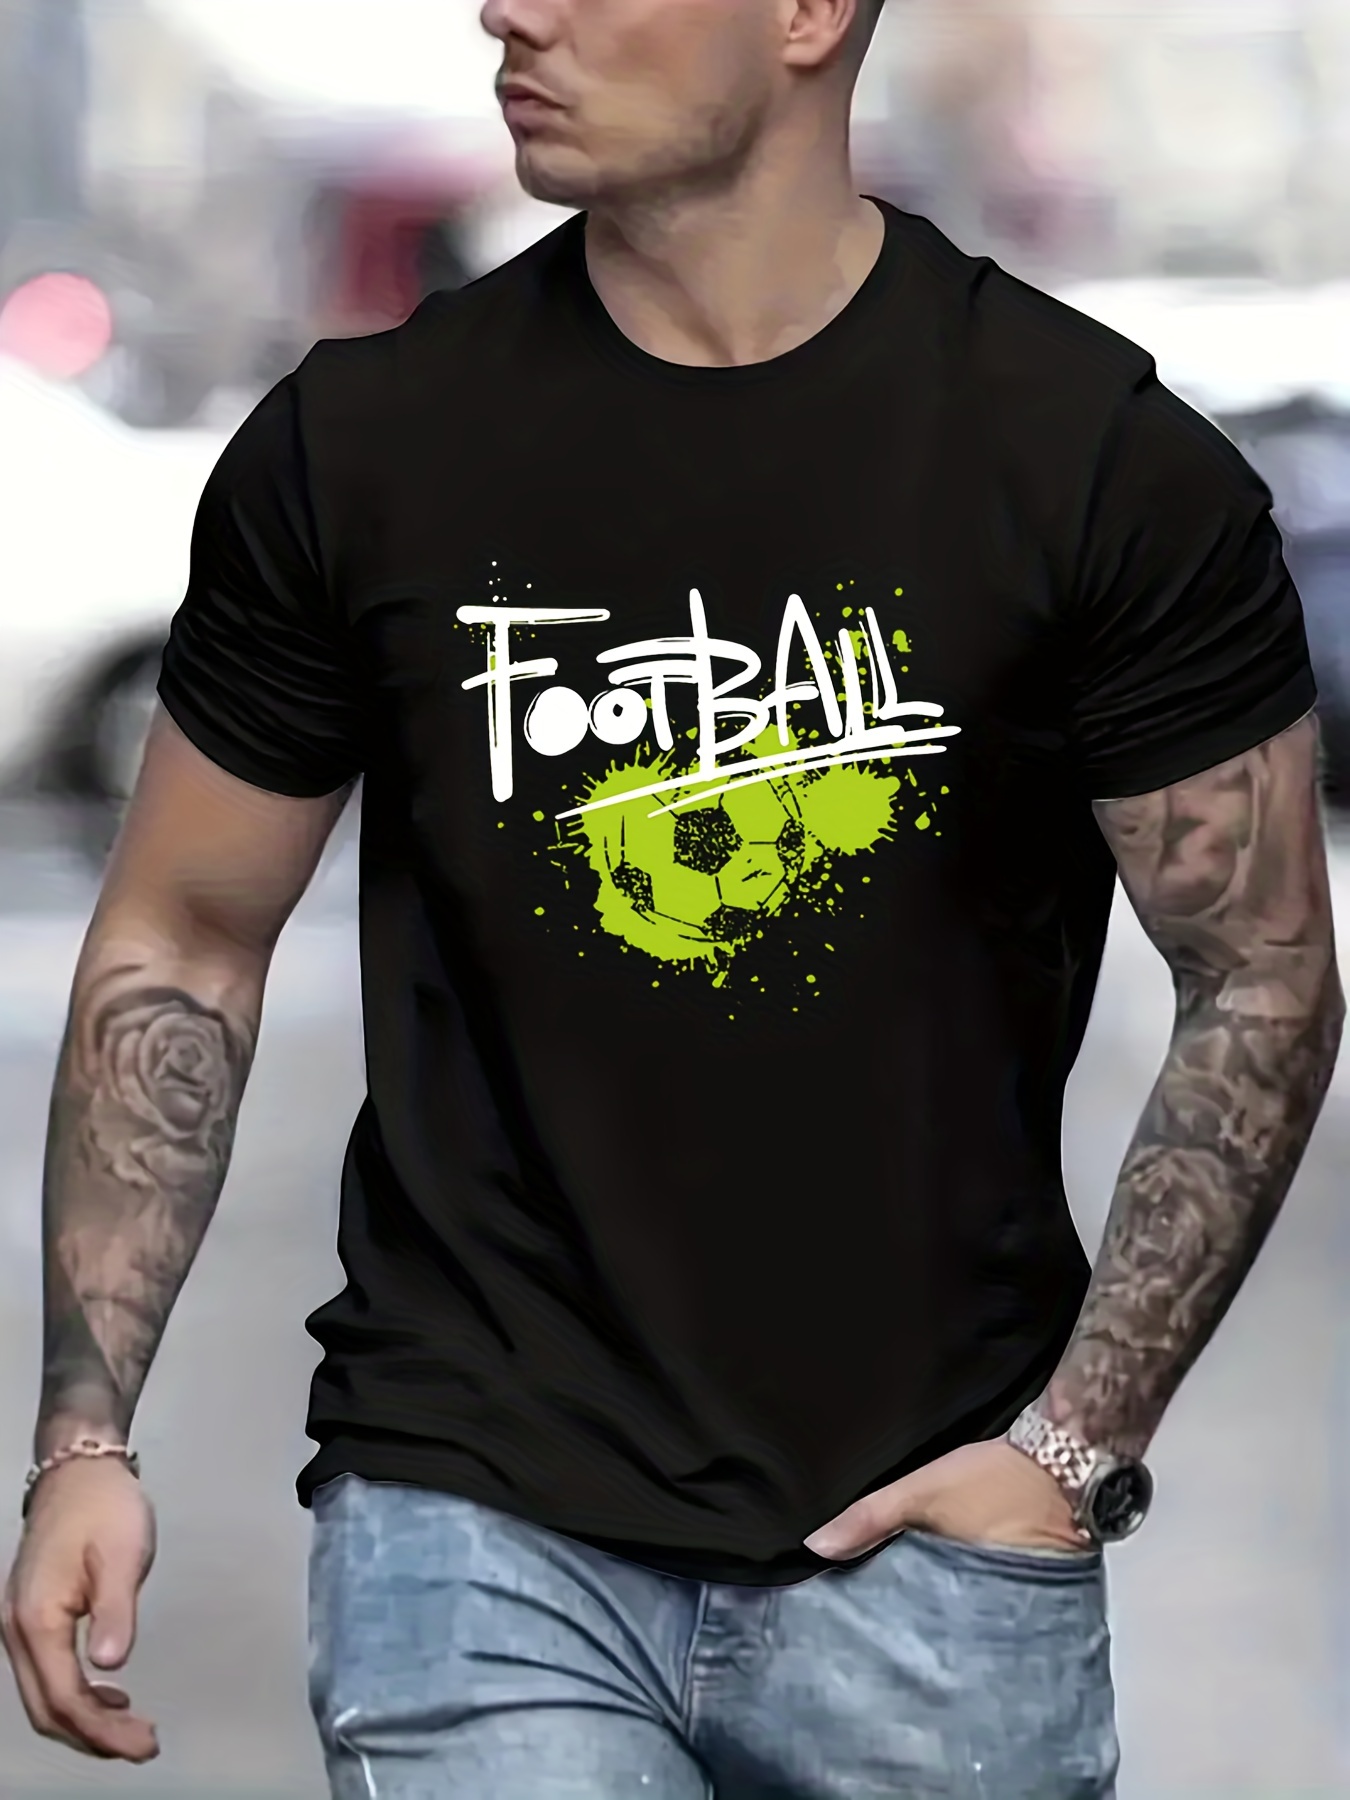 Splash Football Tshirt